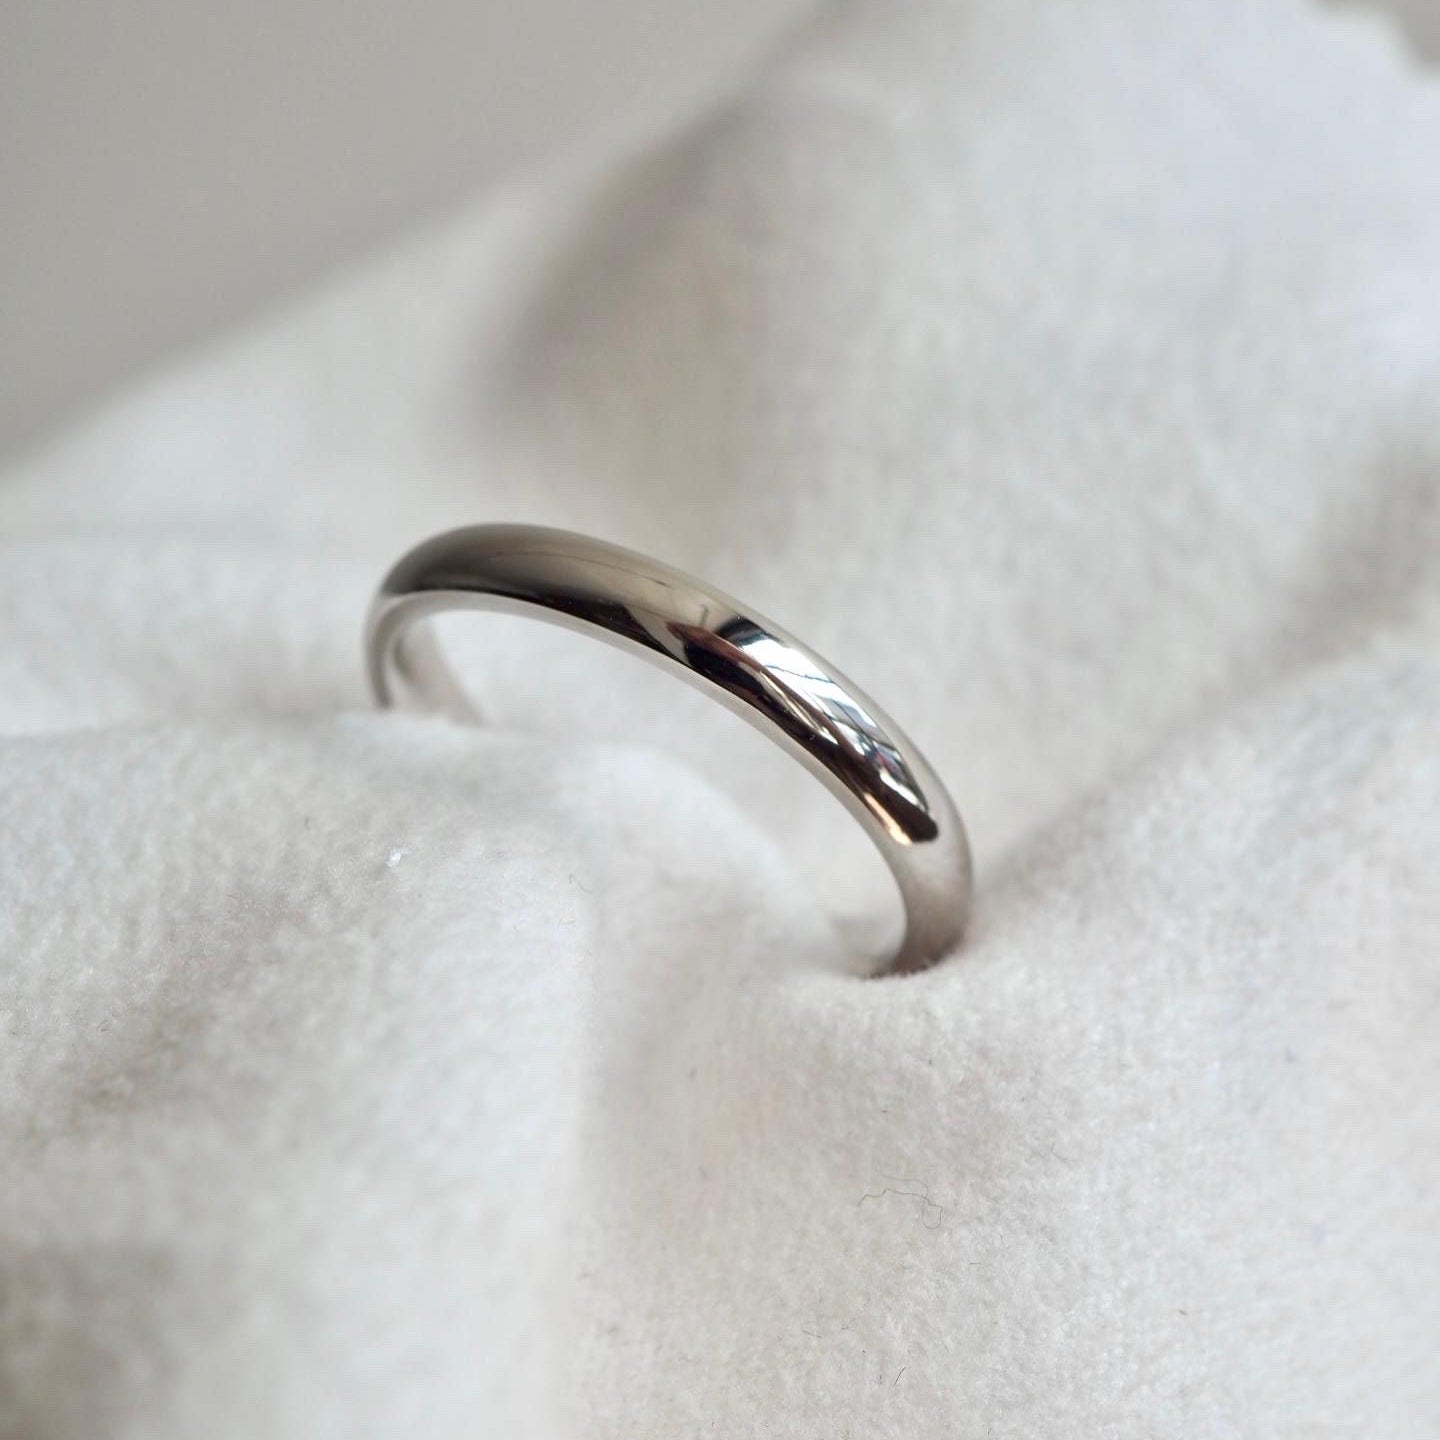 Seb's Wedding Ring